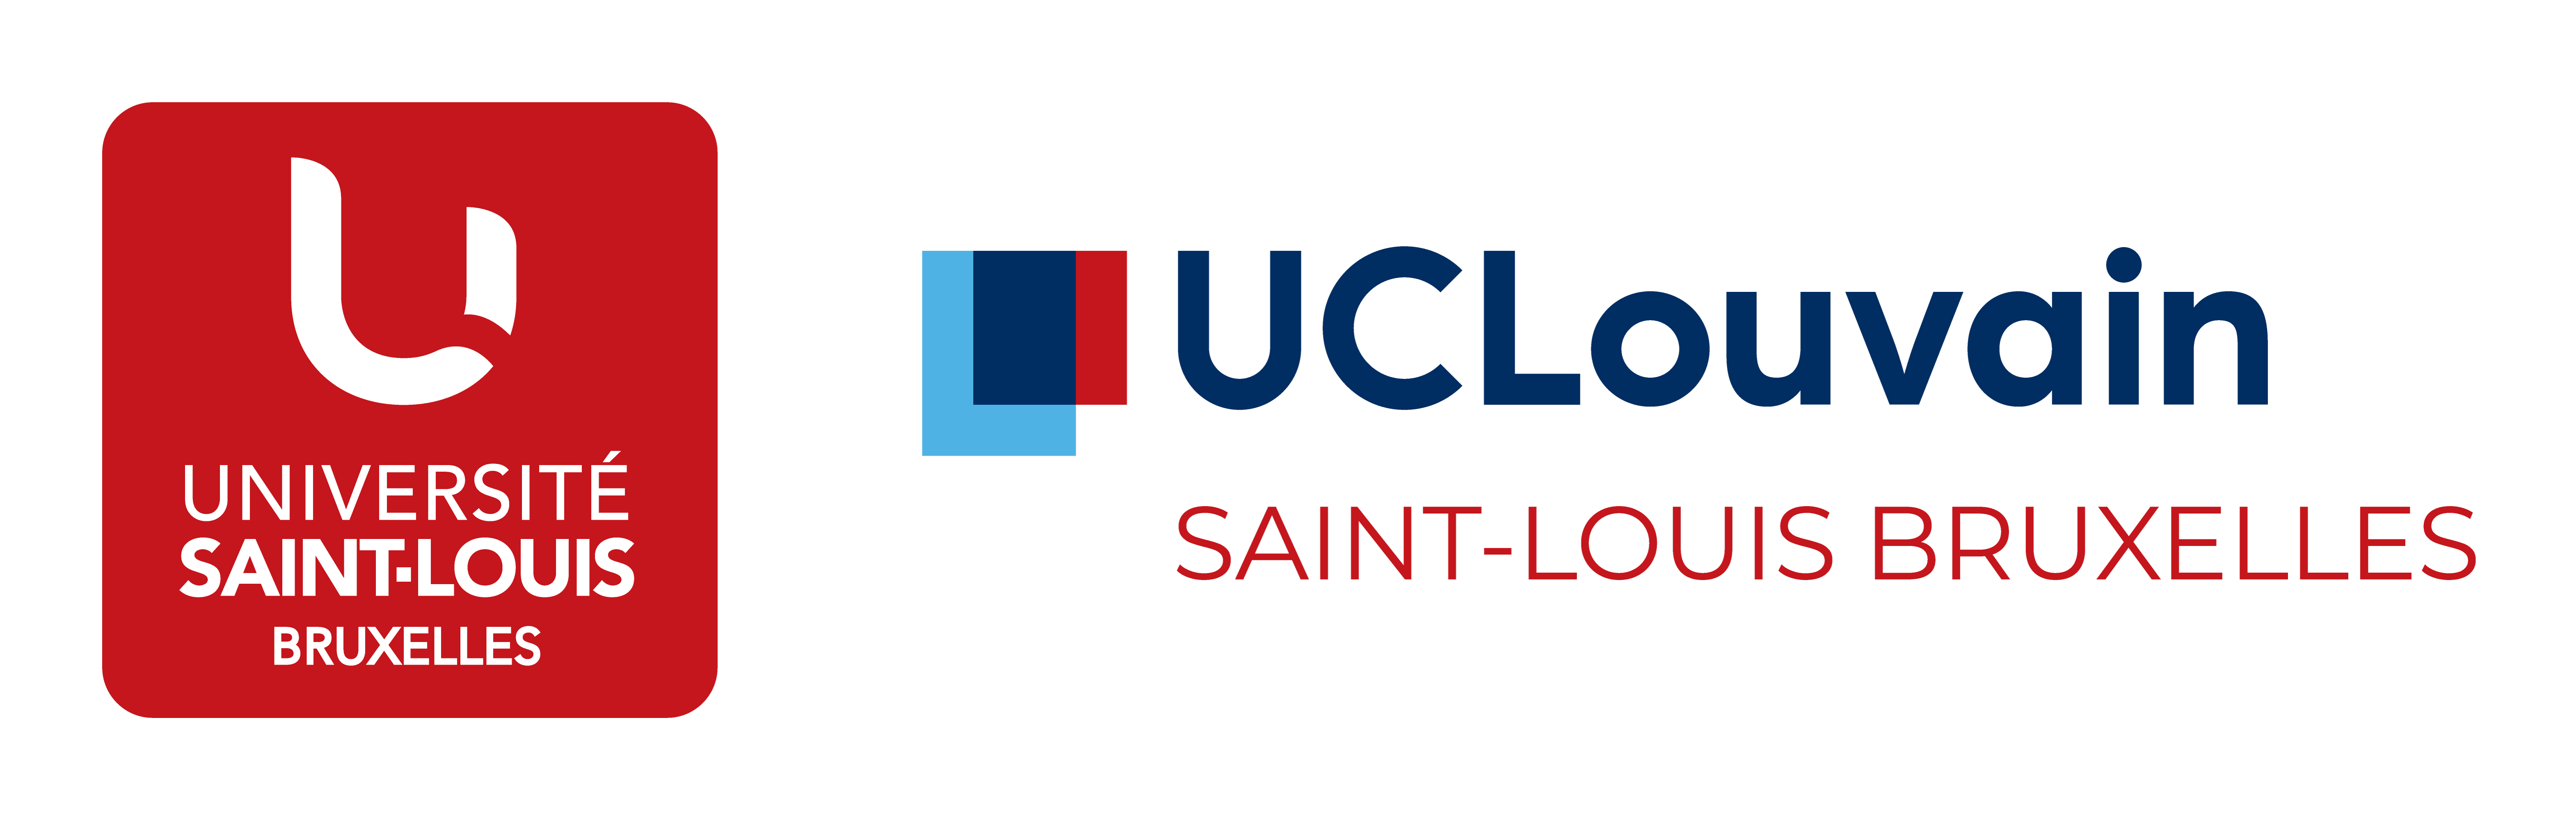 Saint-Louis Logo - File:UCLouvain Saint-Louis - Bruxelles.png - Wikimedia Commons